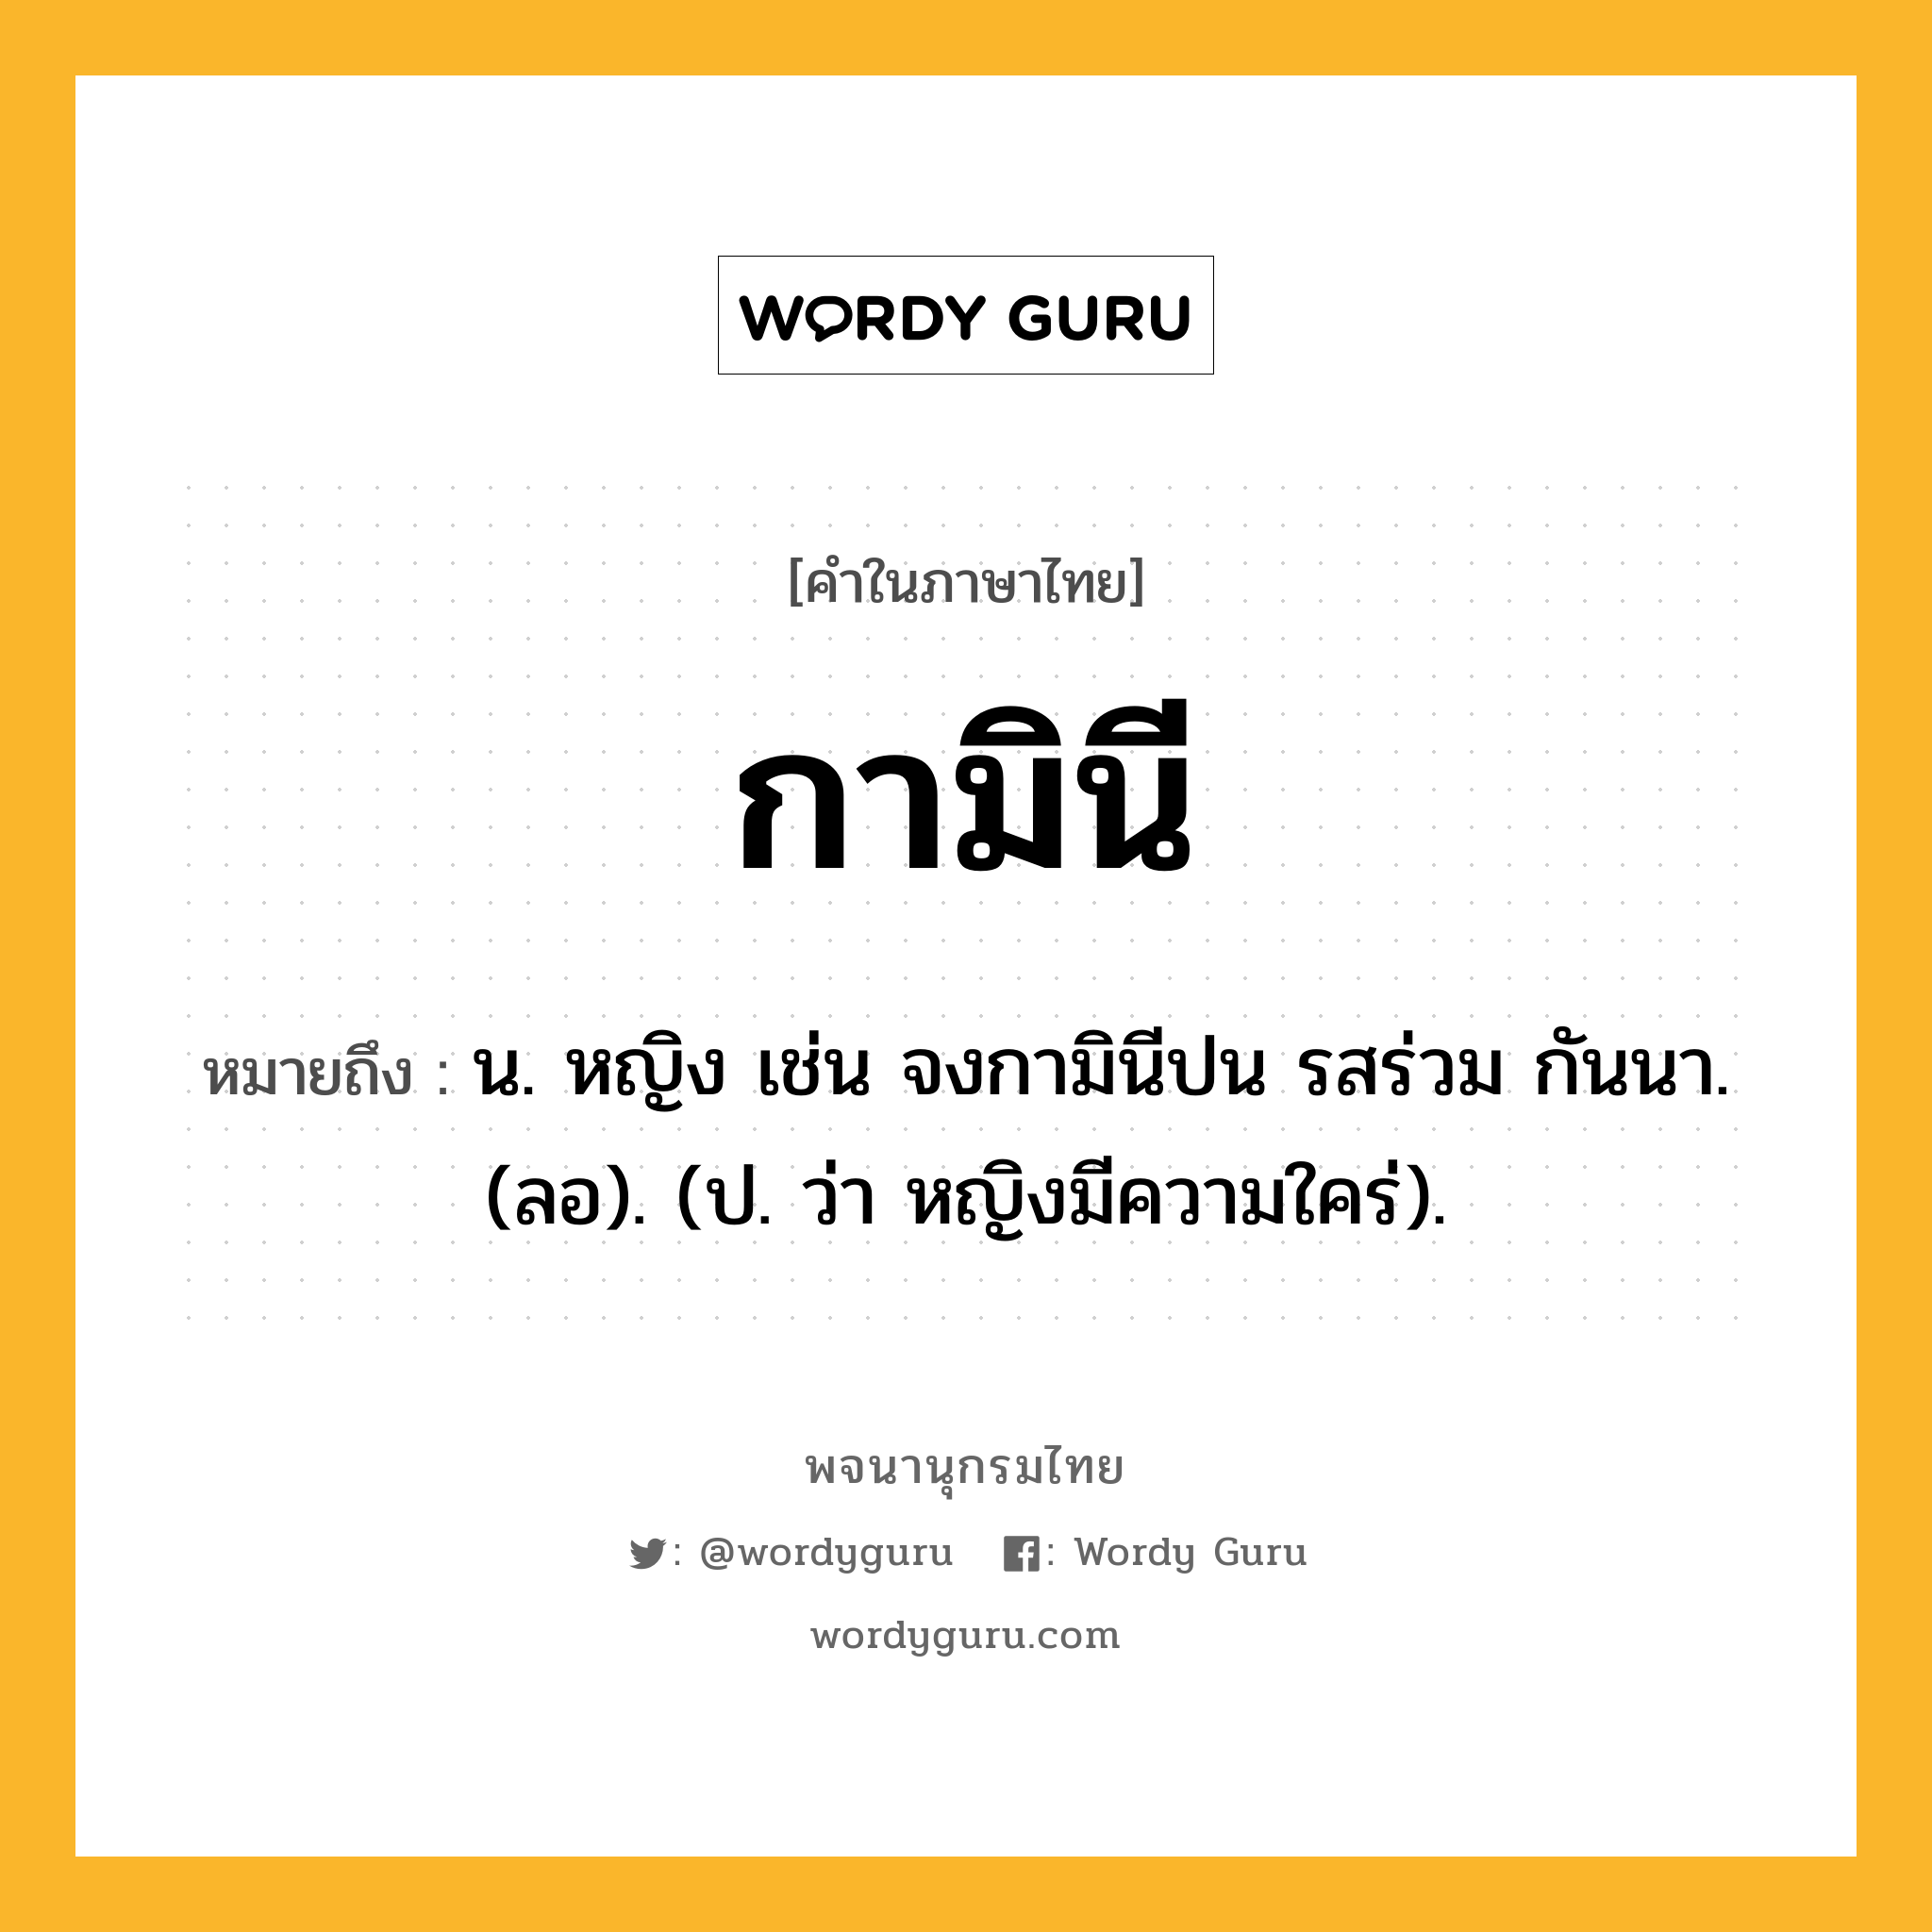 กามินี หมายถึงอะไร?, คำในภาษาไทย กามินี หมายถึง น. หญิง เช่น จงกามินีปน รสร่วม กันนา. (ลอ). (ป. ว่า หญิงมีความใคร่).